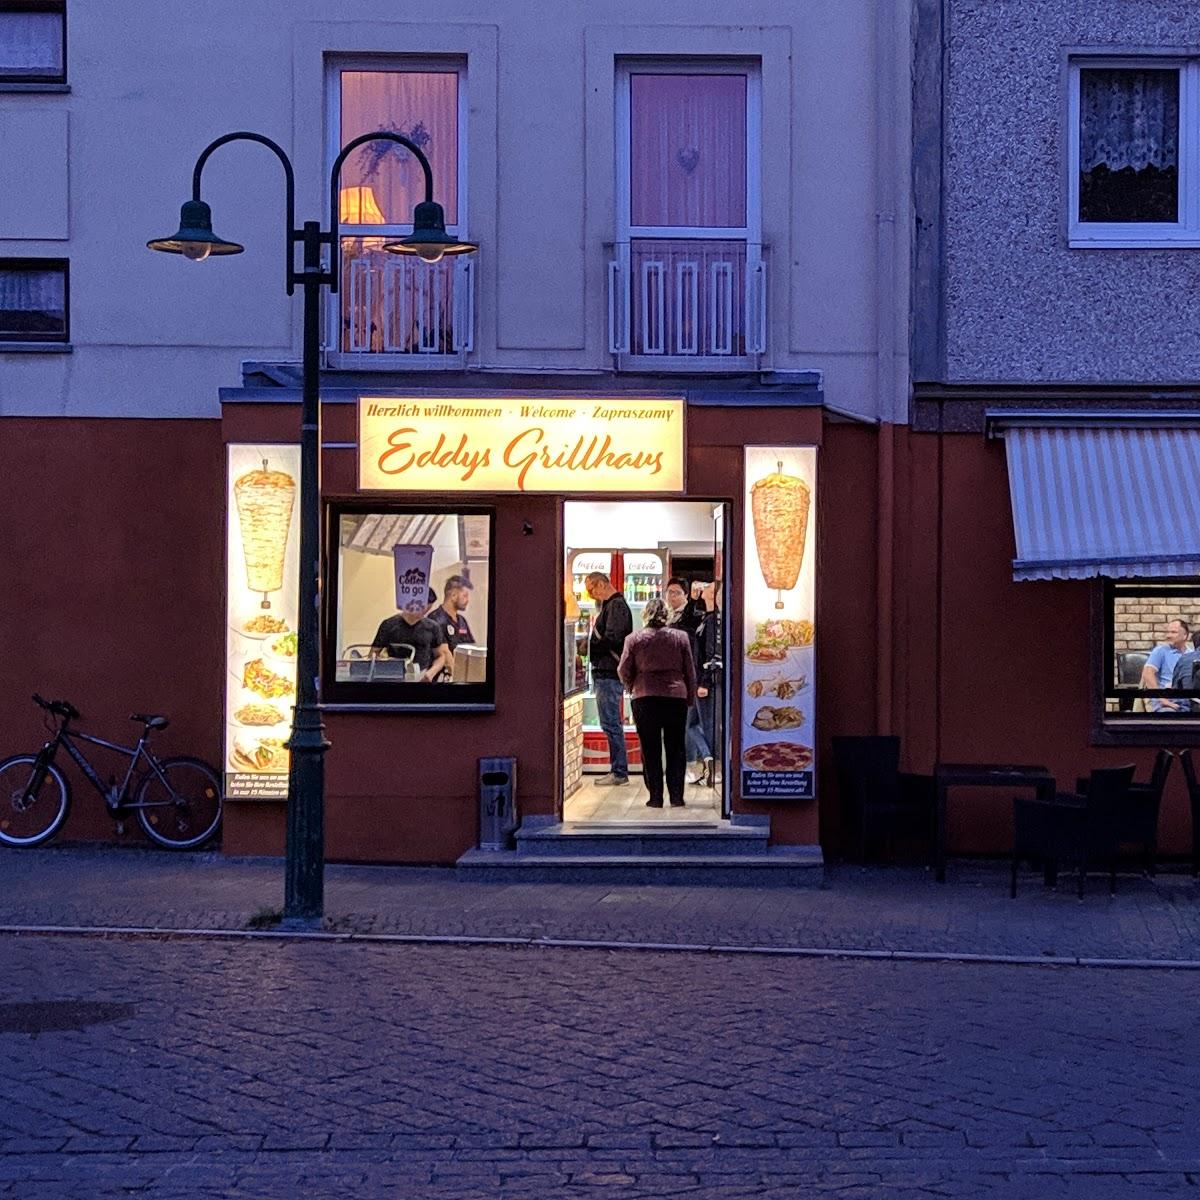 Restaurant "Eddys Grillhaus Döner" in Pasewalk